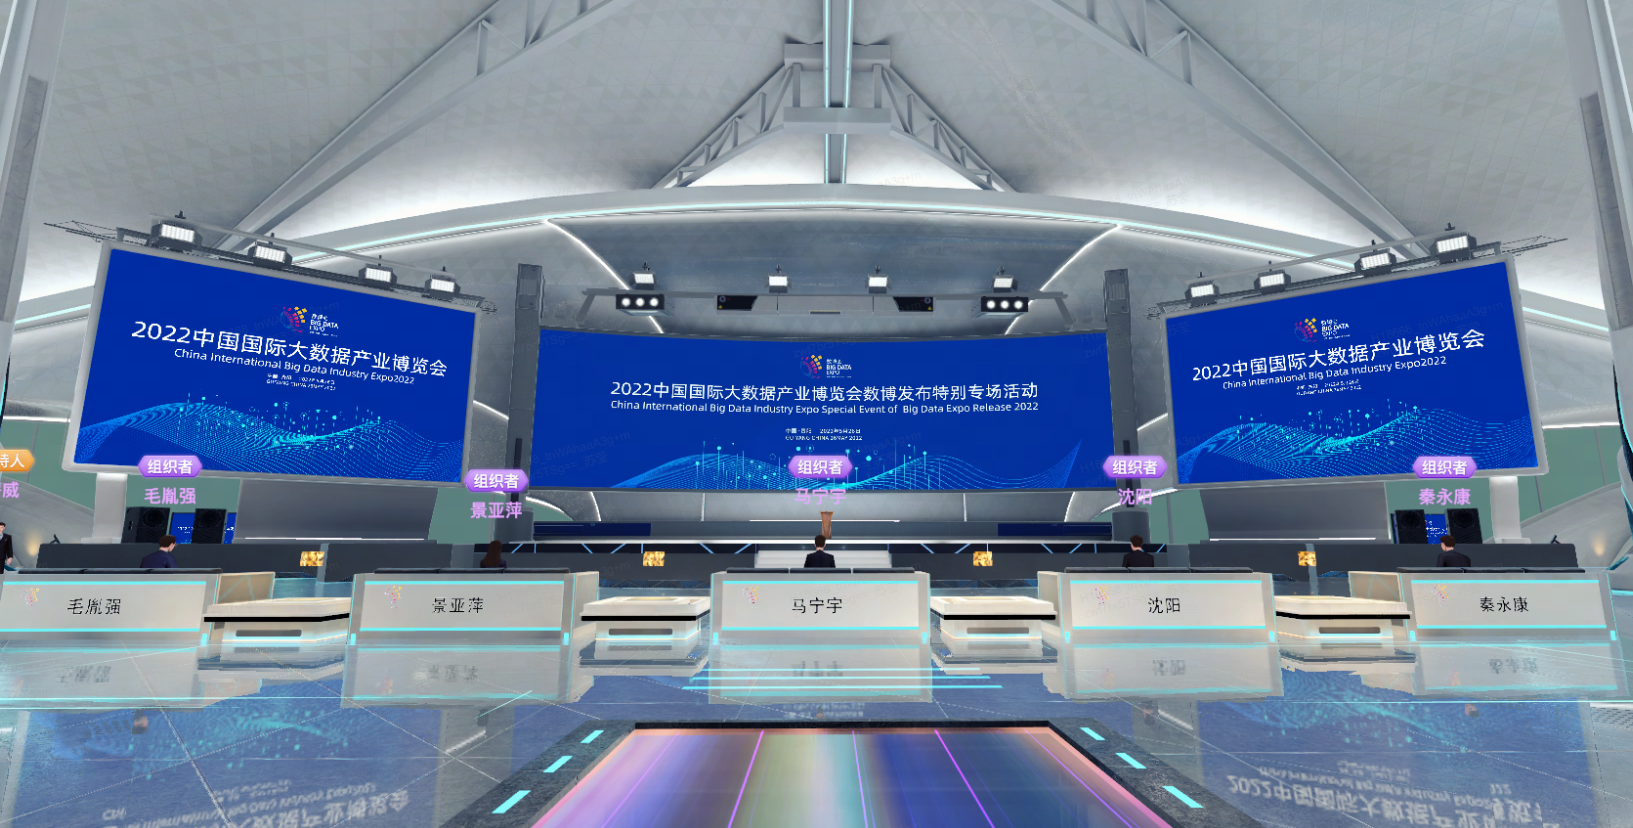 图片展示了一个现代化的会议场地，有屏幕显示2022年信息，座位整齐，氛围科技感强烈。